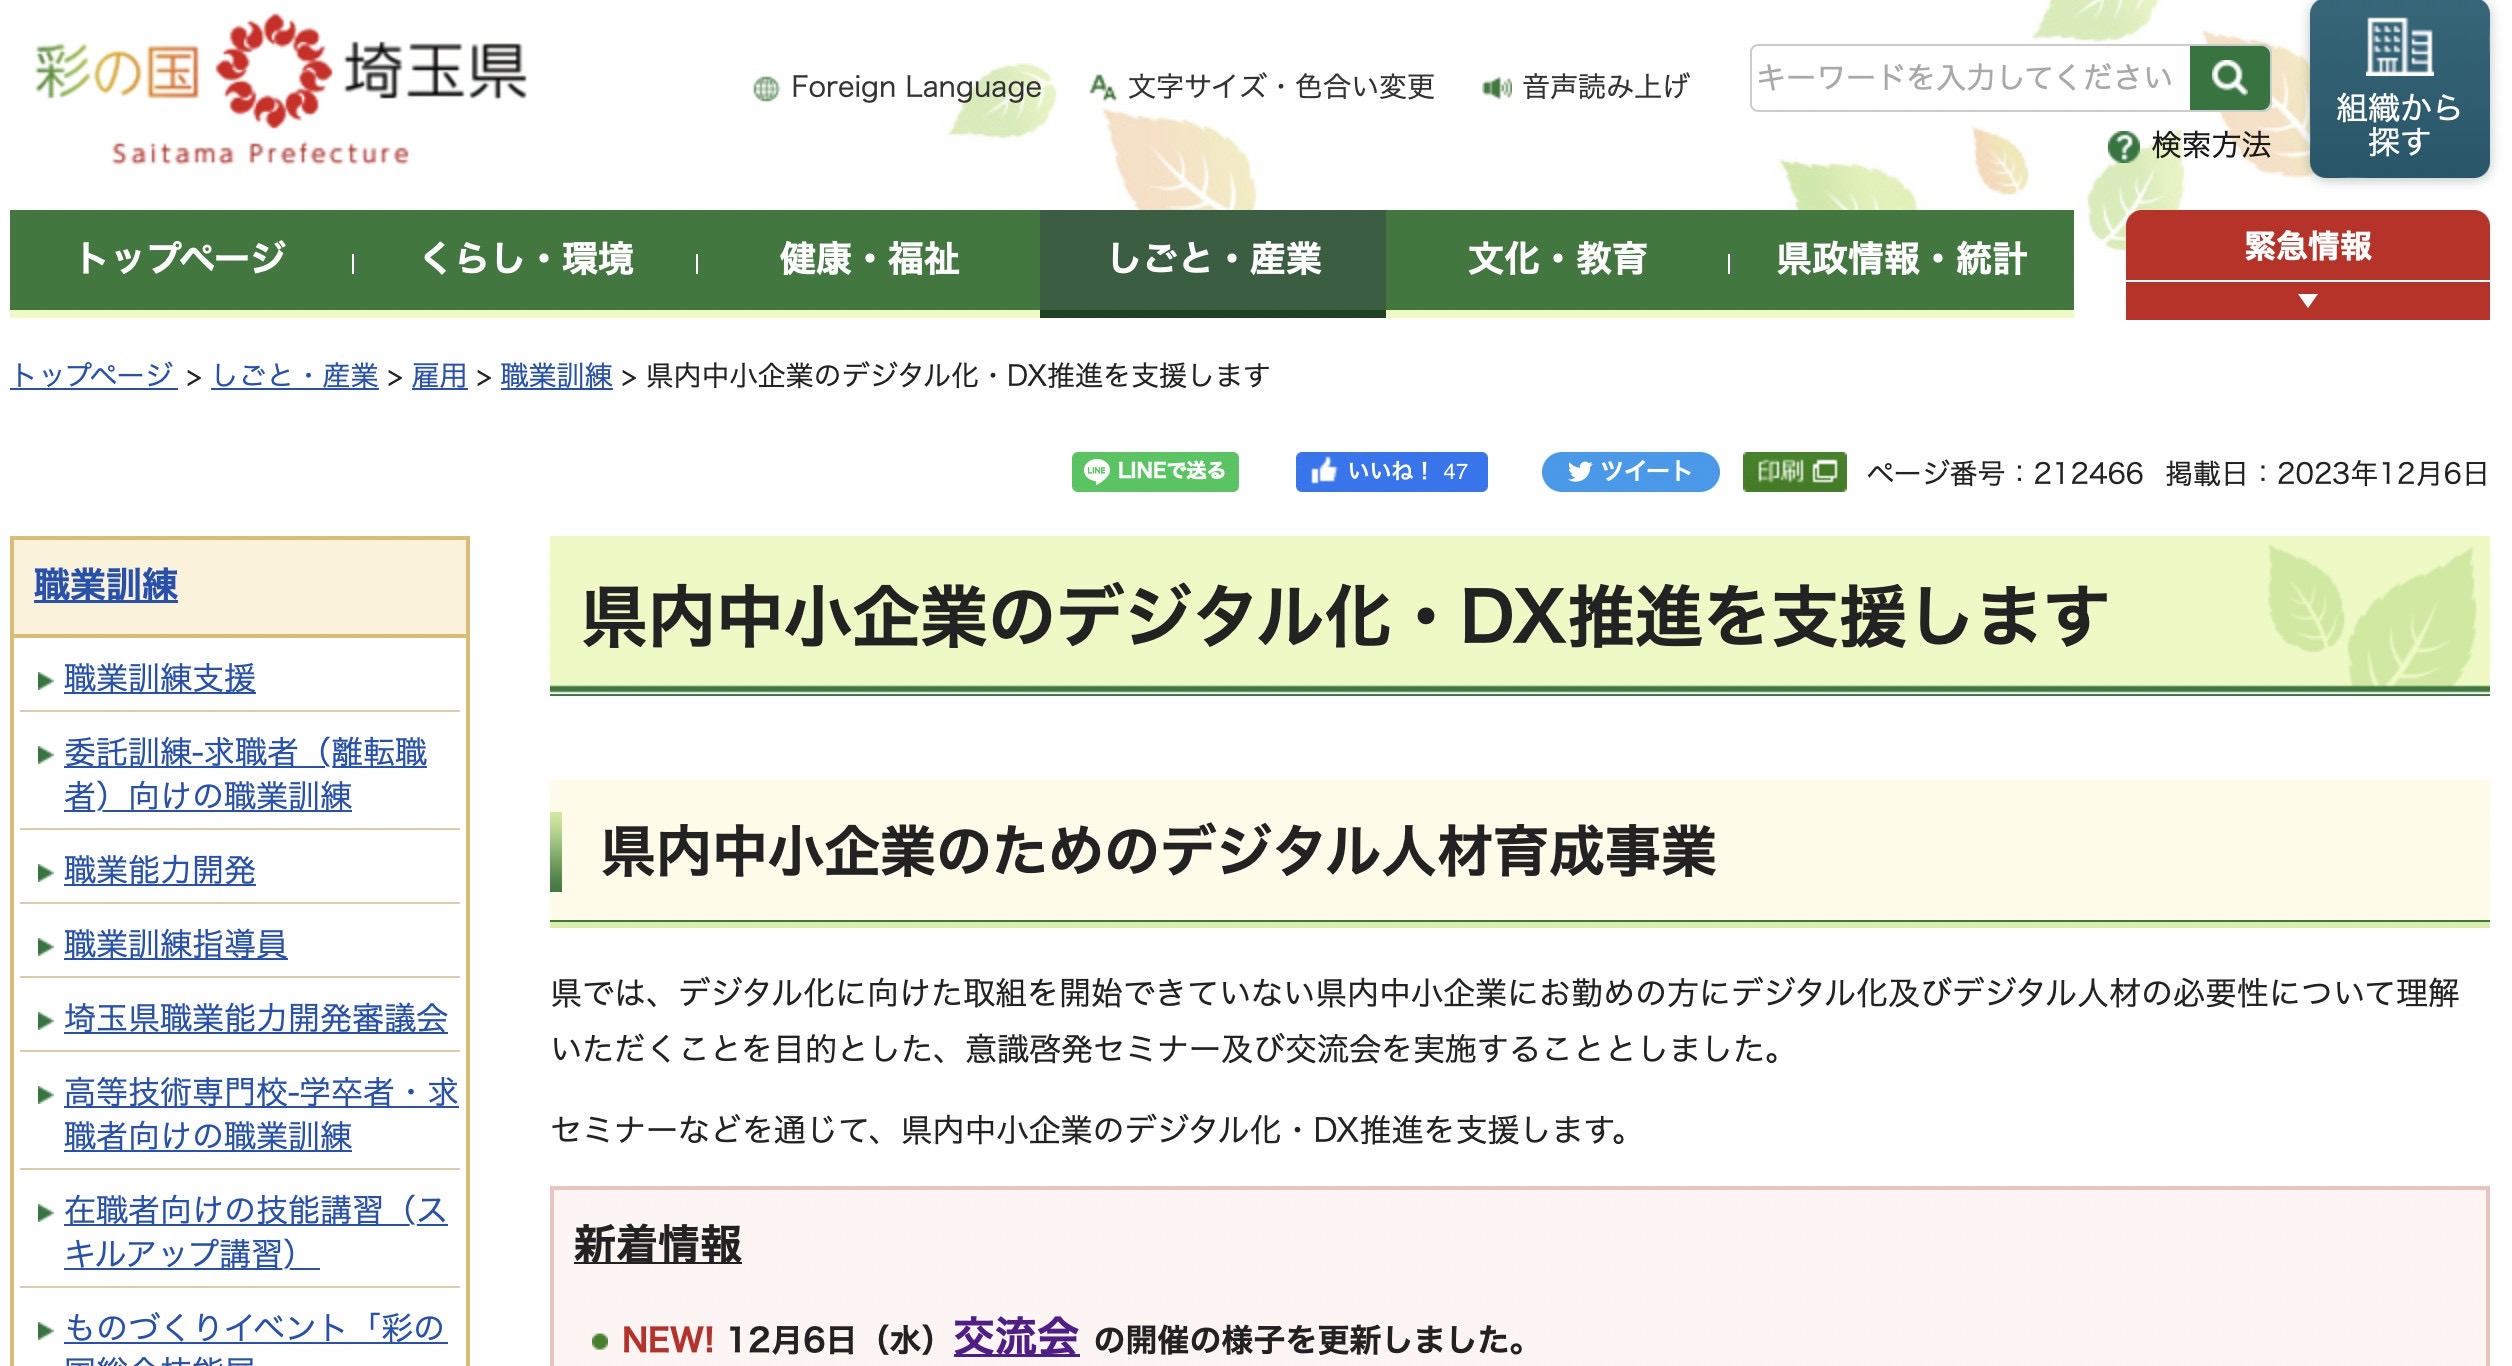 DX先進企業として埼玉県HPに掲載して頂きました！